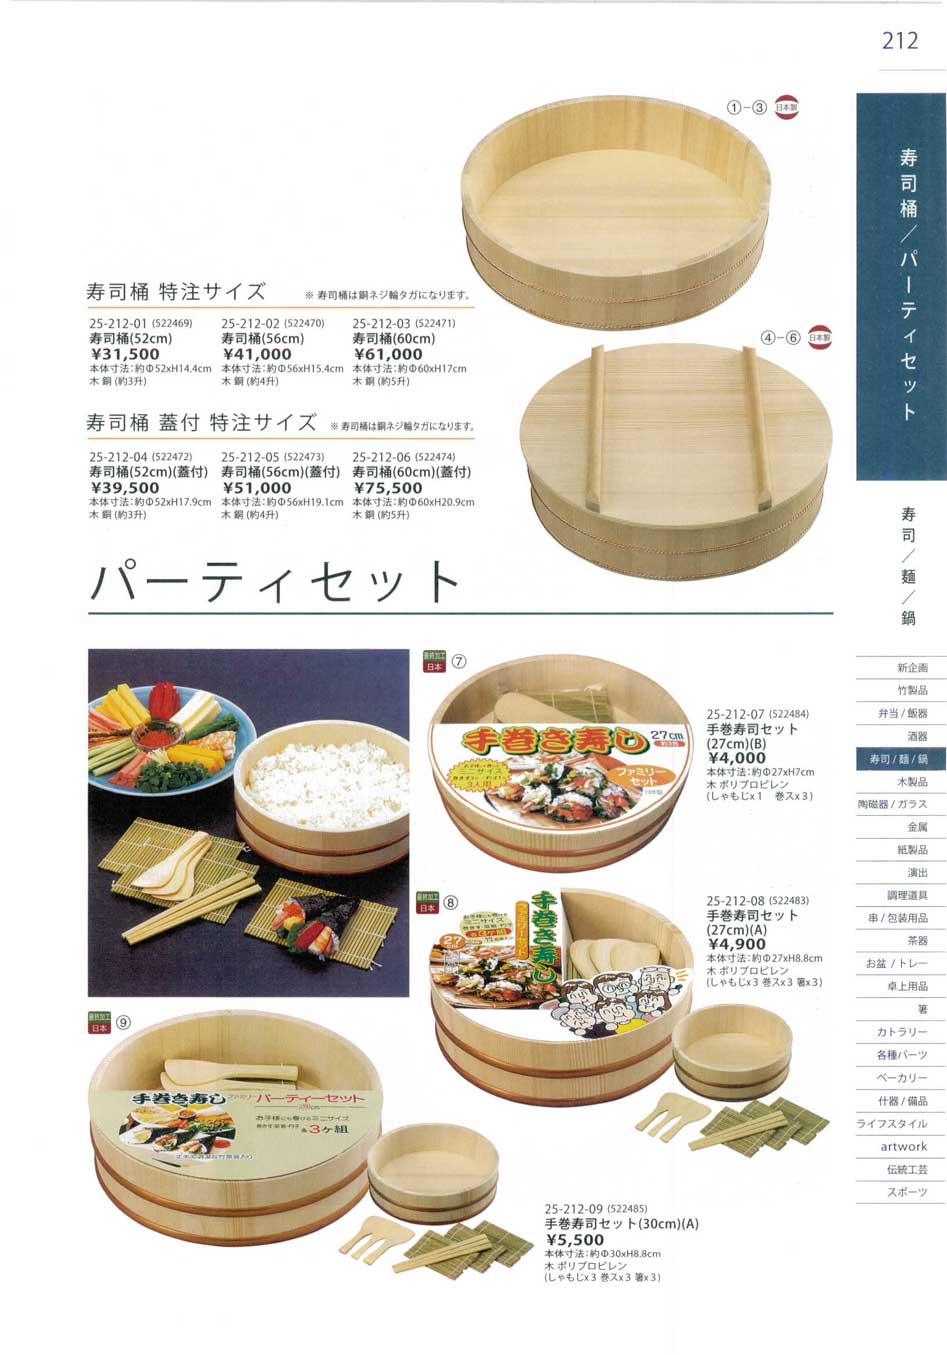 食器 寿司桶・パーティセットSushi Buckets/Party Set 